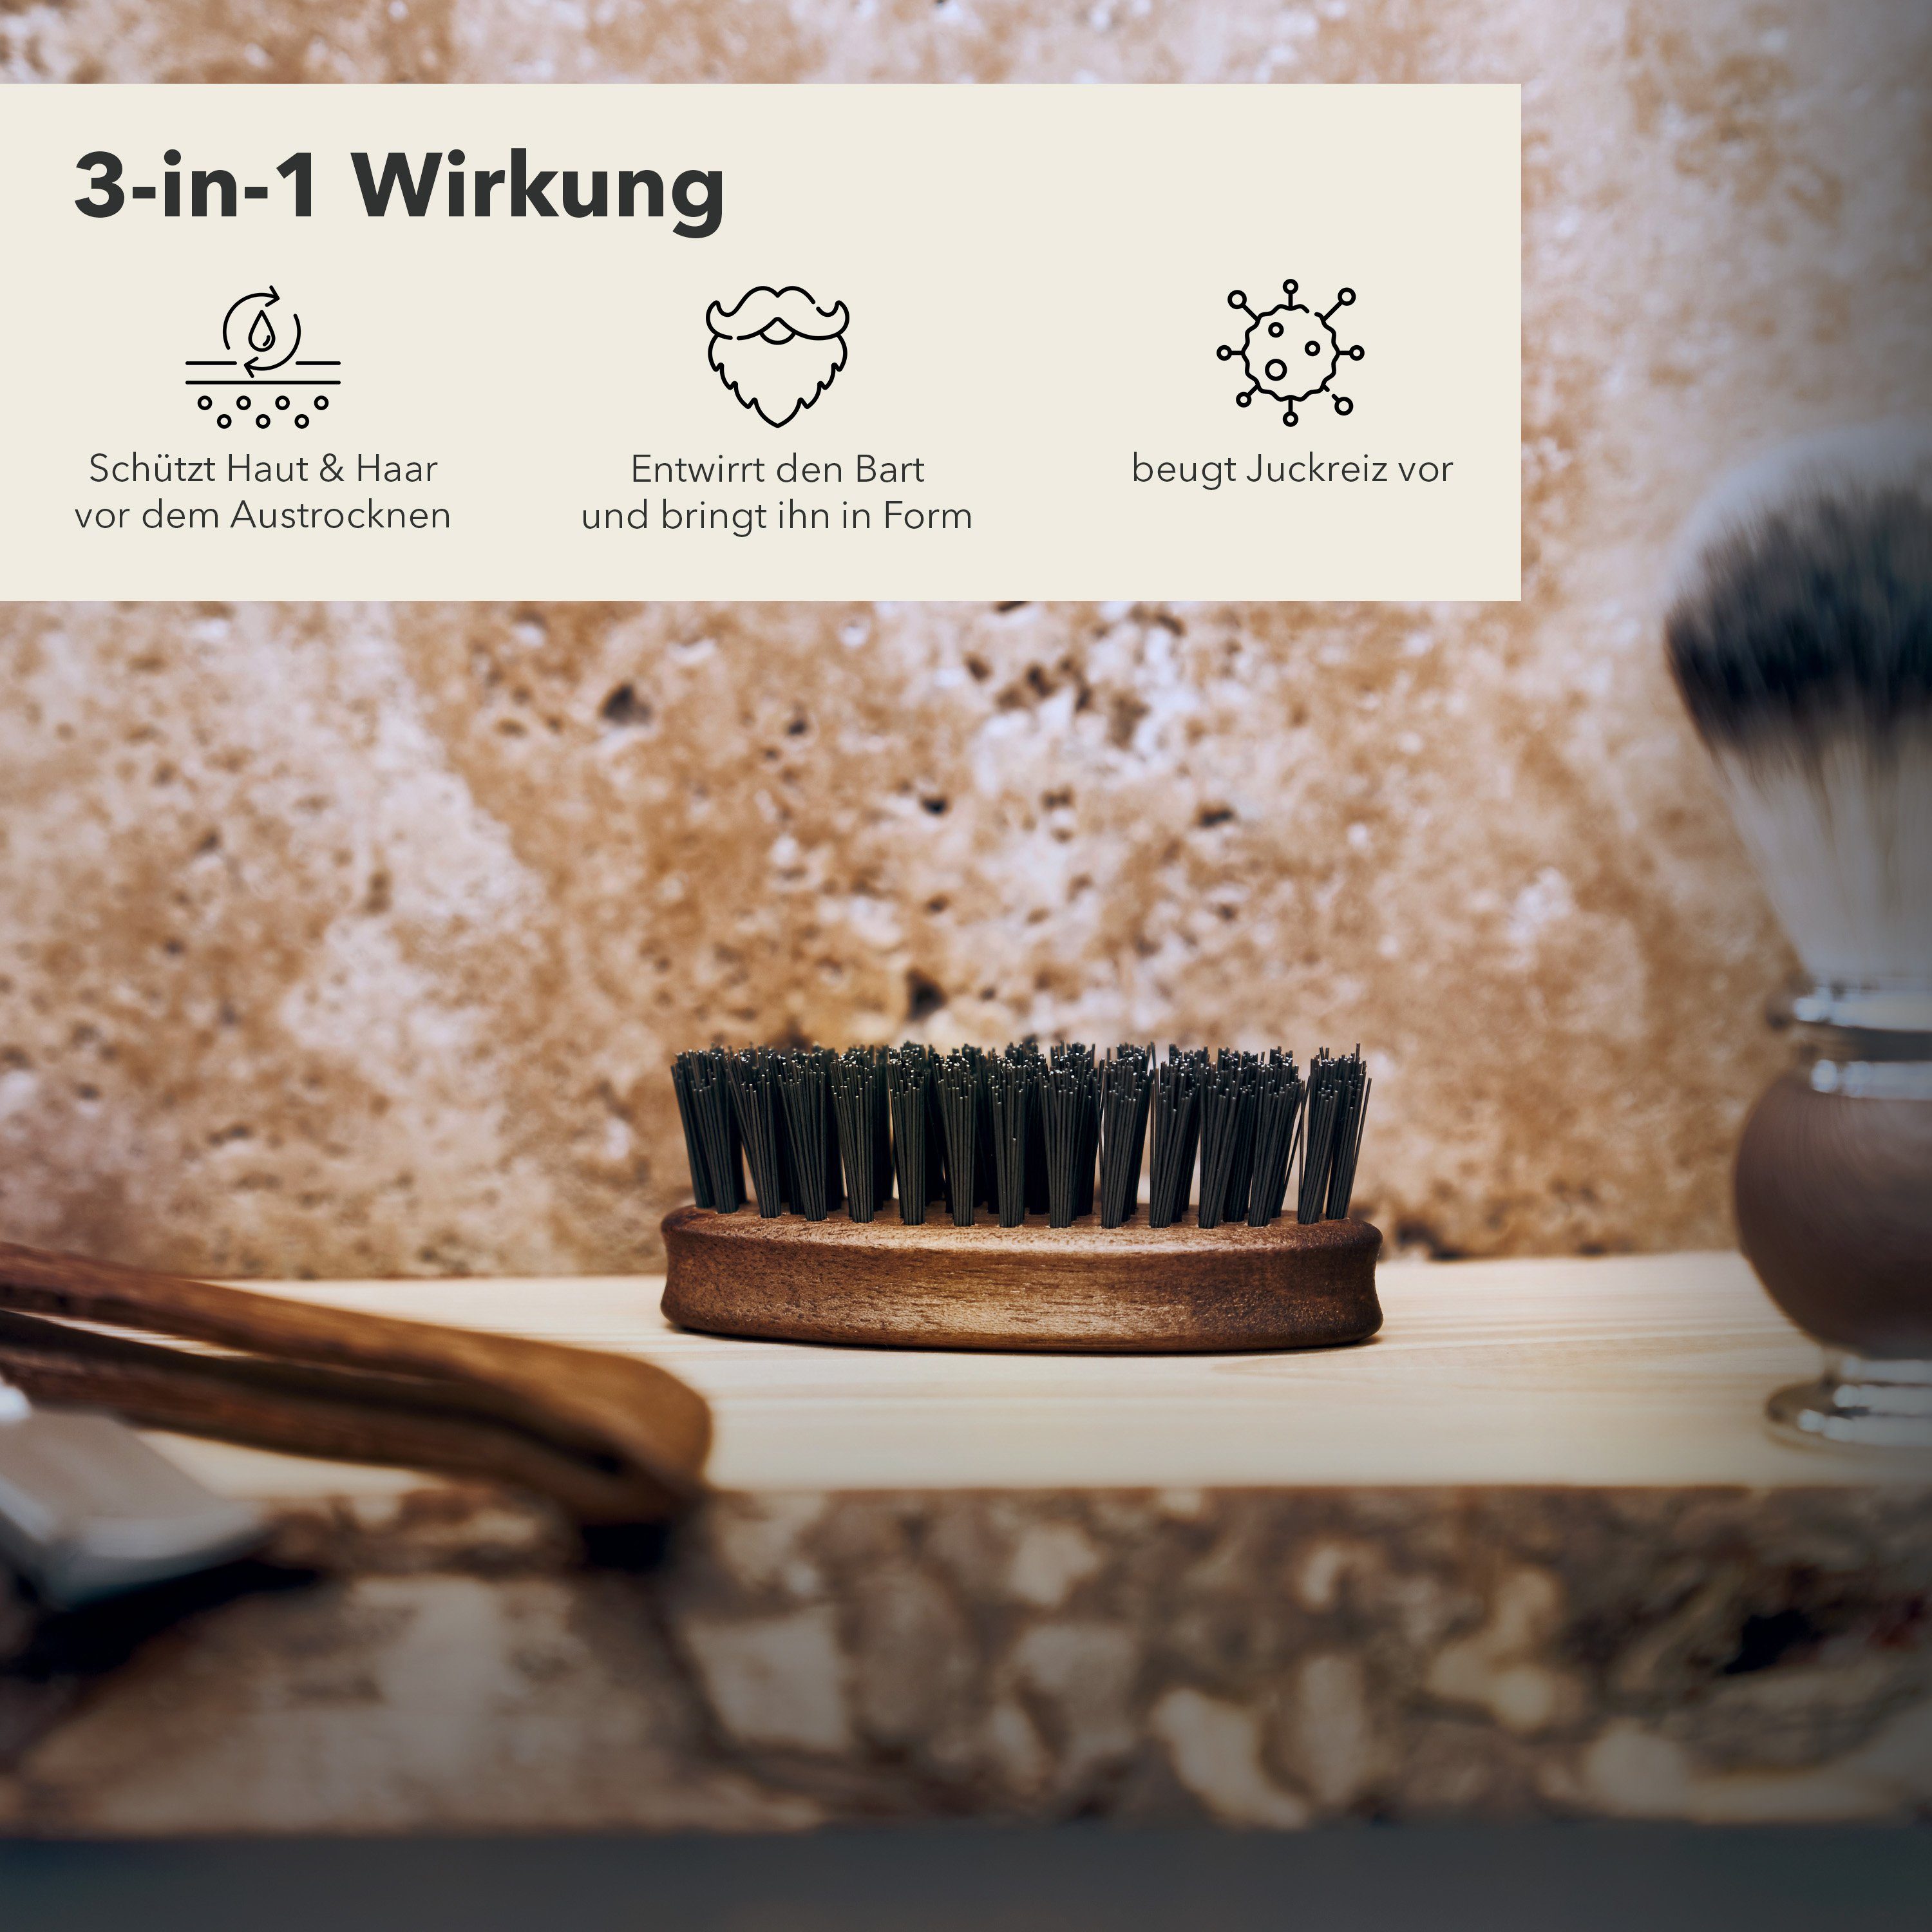 Störtebekker Bartbürste Entwirrt den Bart Germany bringt - und Form Made ihn in in